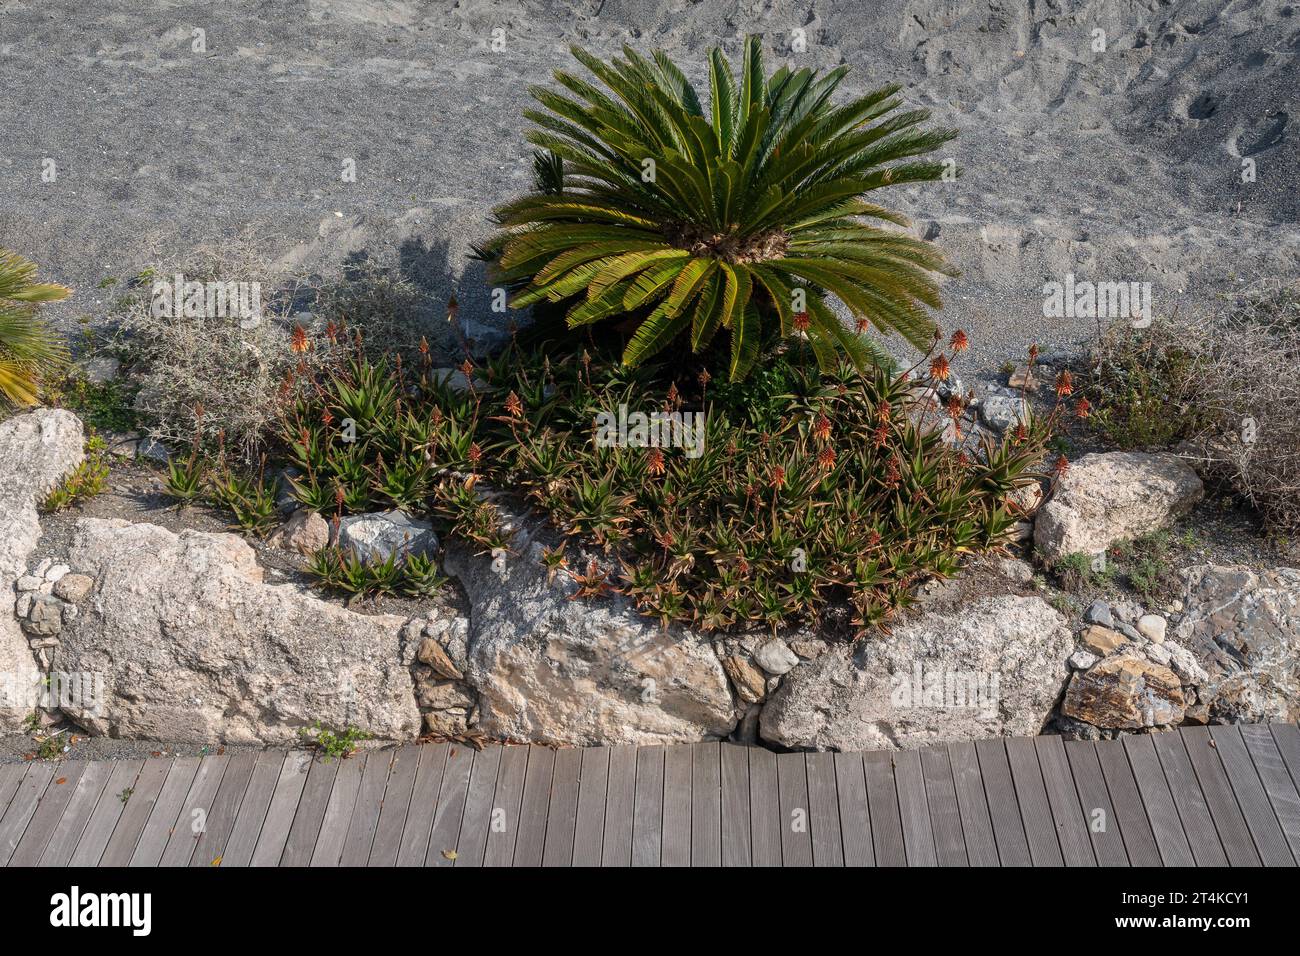 Vista de alto ángulo de un jardín de rocas en la playa con una pequeña palma y plantas de aloe (aloe vera) en primavera, Liguria, Italia Foto de stock